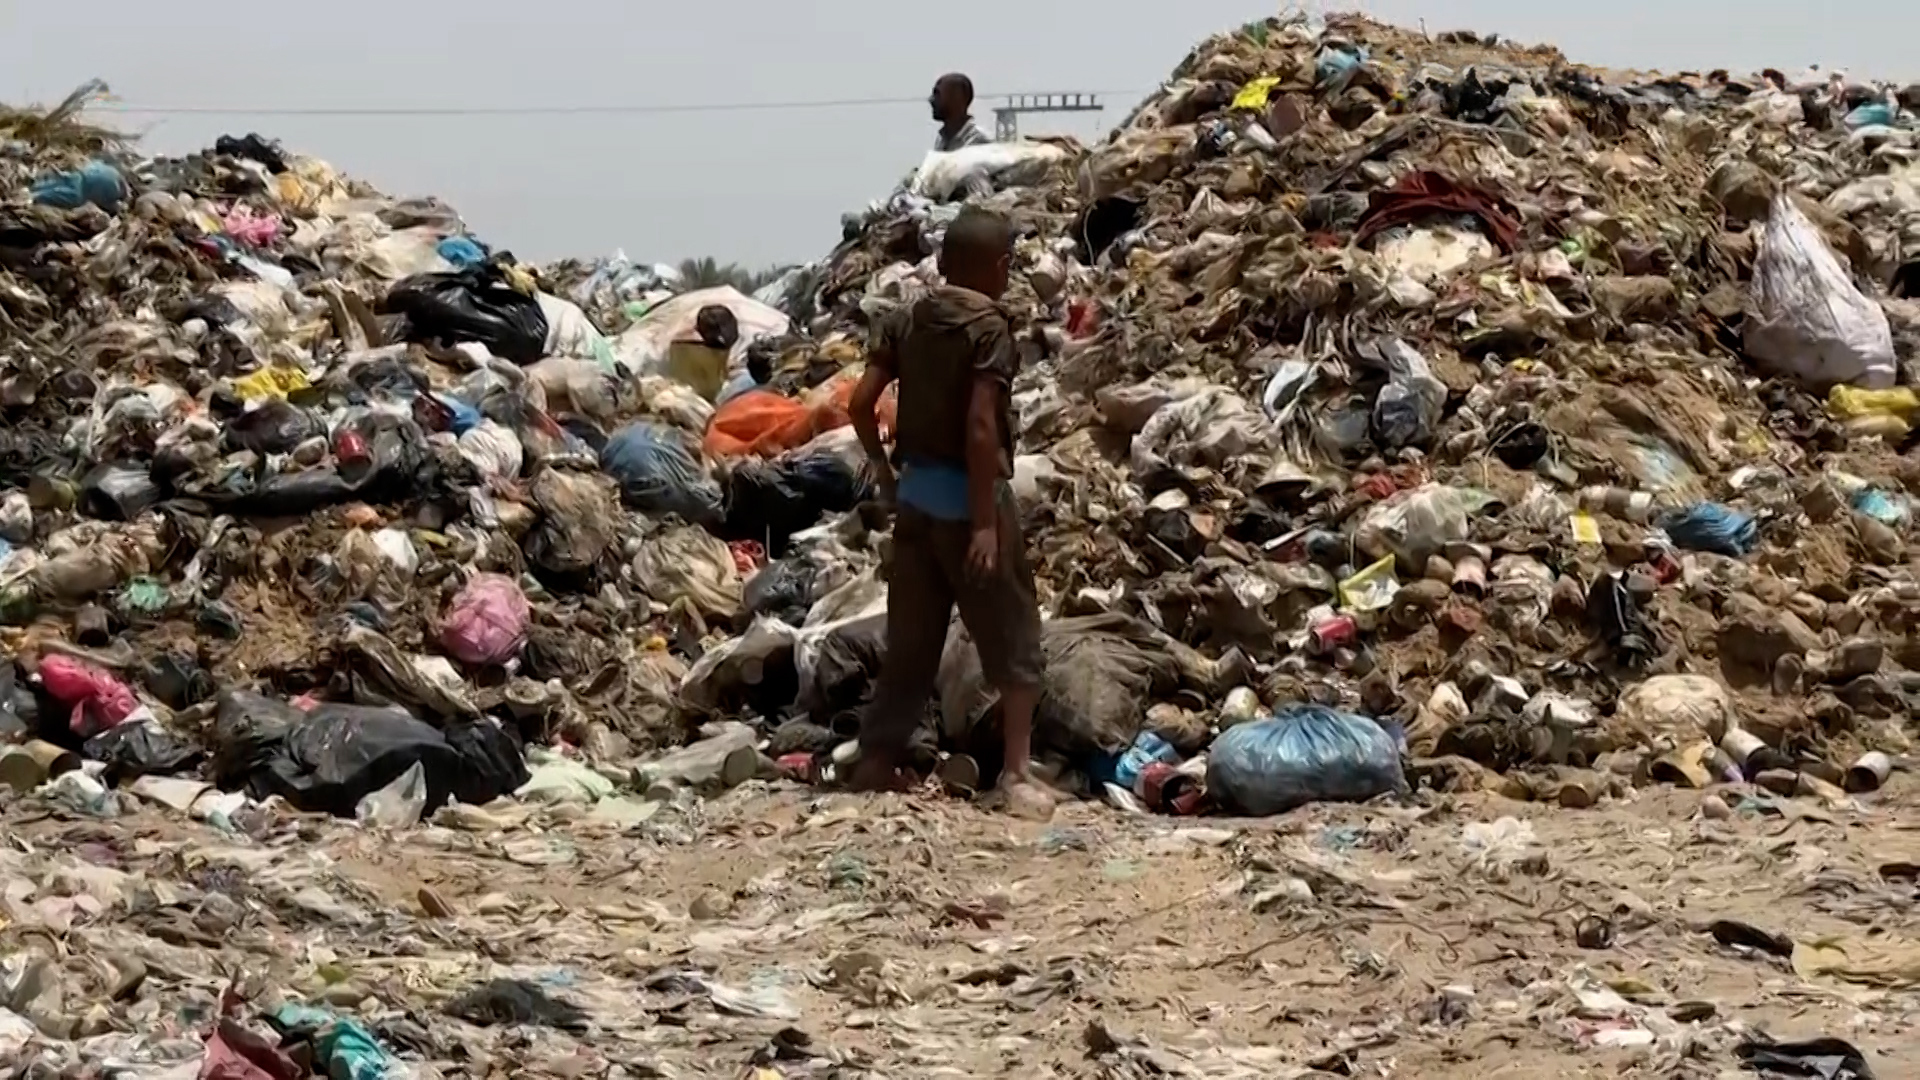 Gaza en danger d'épidémies estivales à cause des déchets accumulés